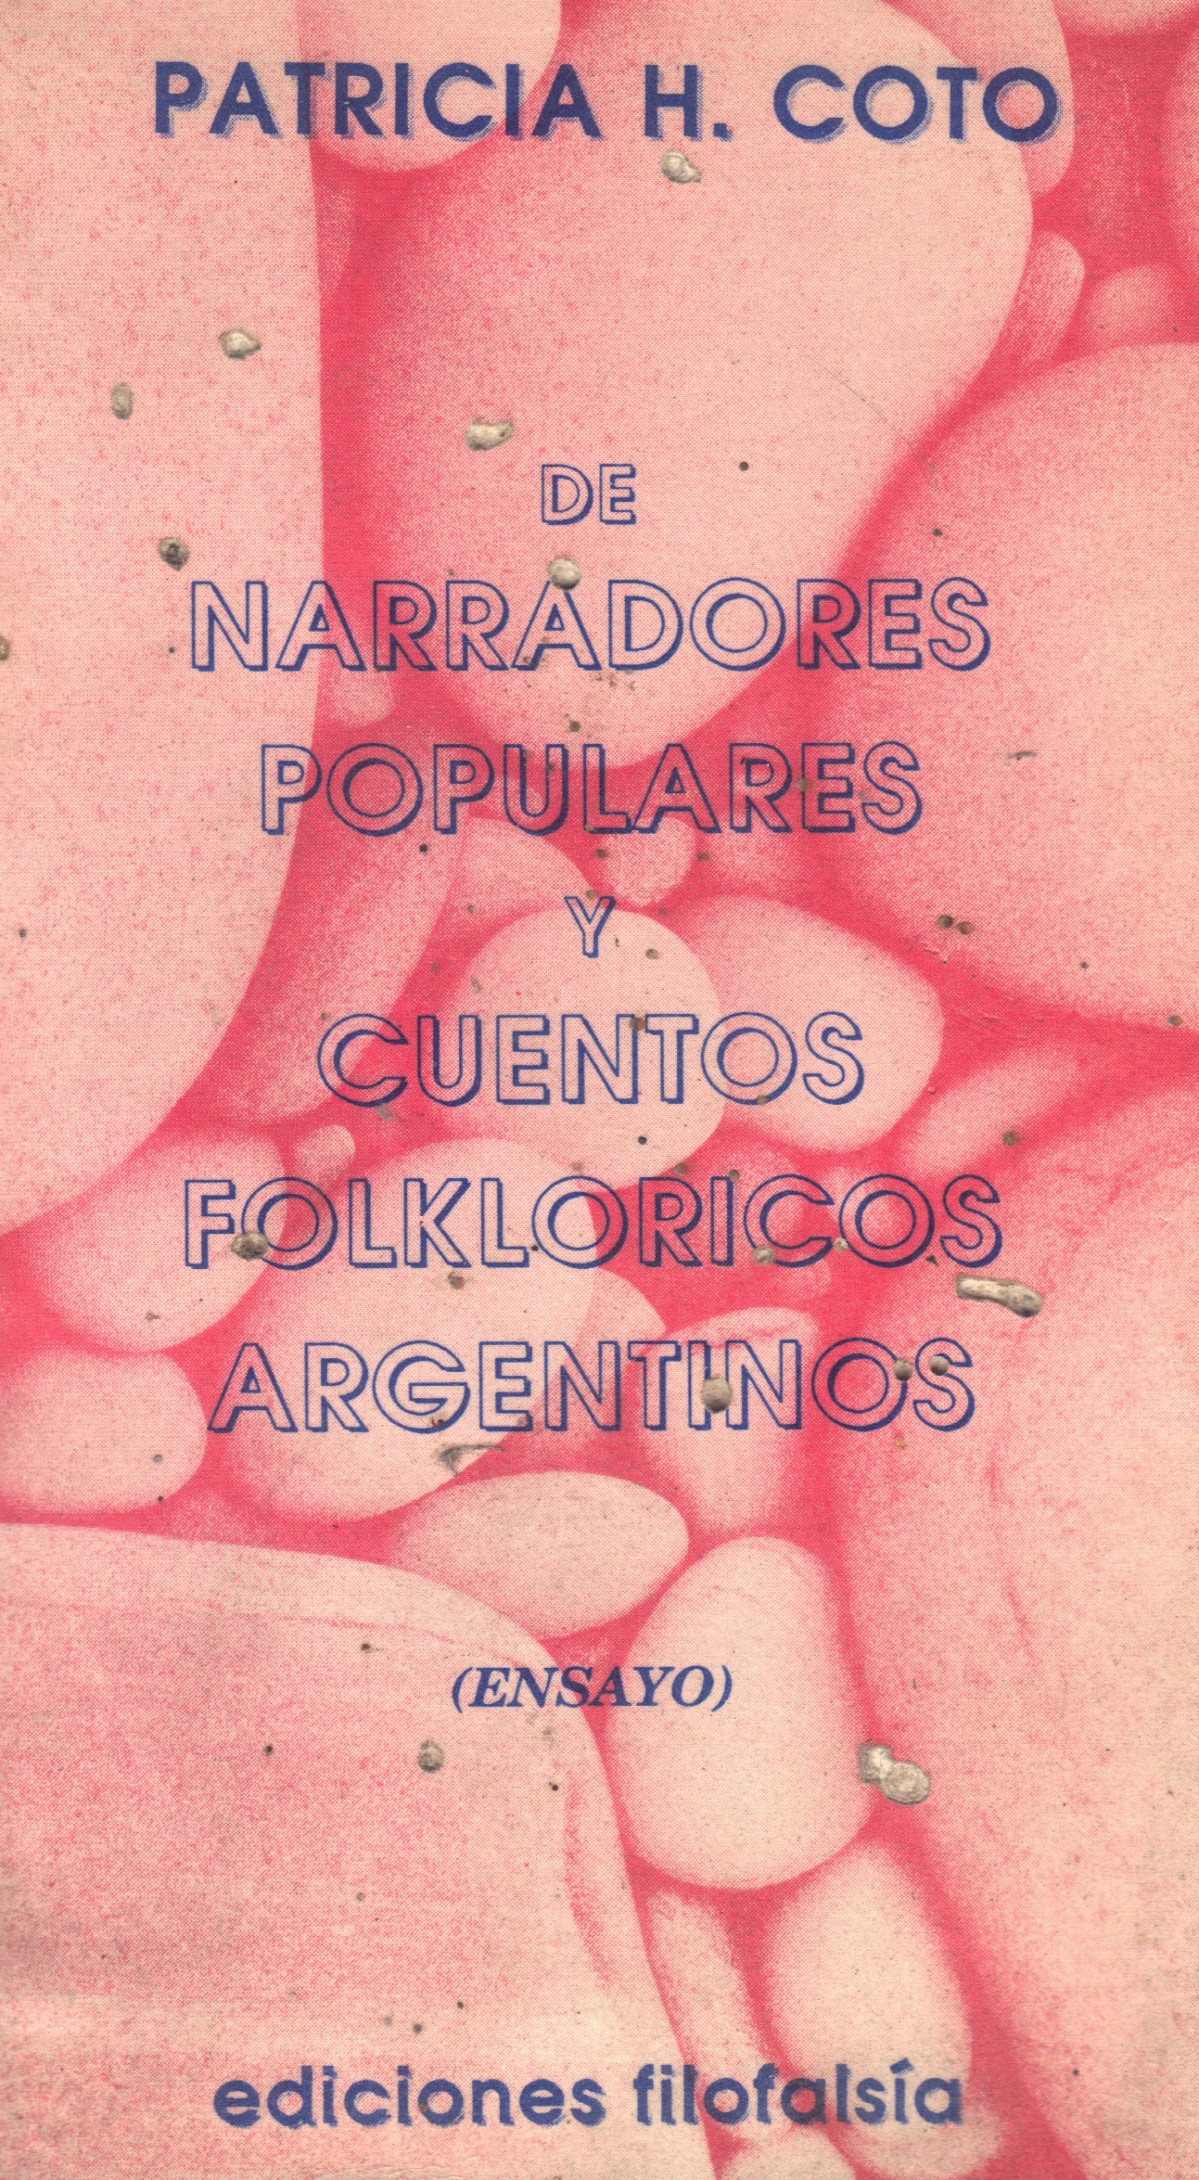 Libro Coto 7   De narradores populares y cuentos folklóricos argentinos